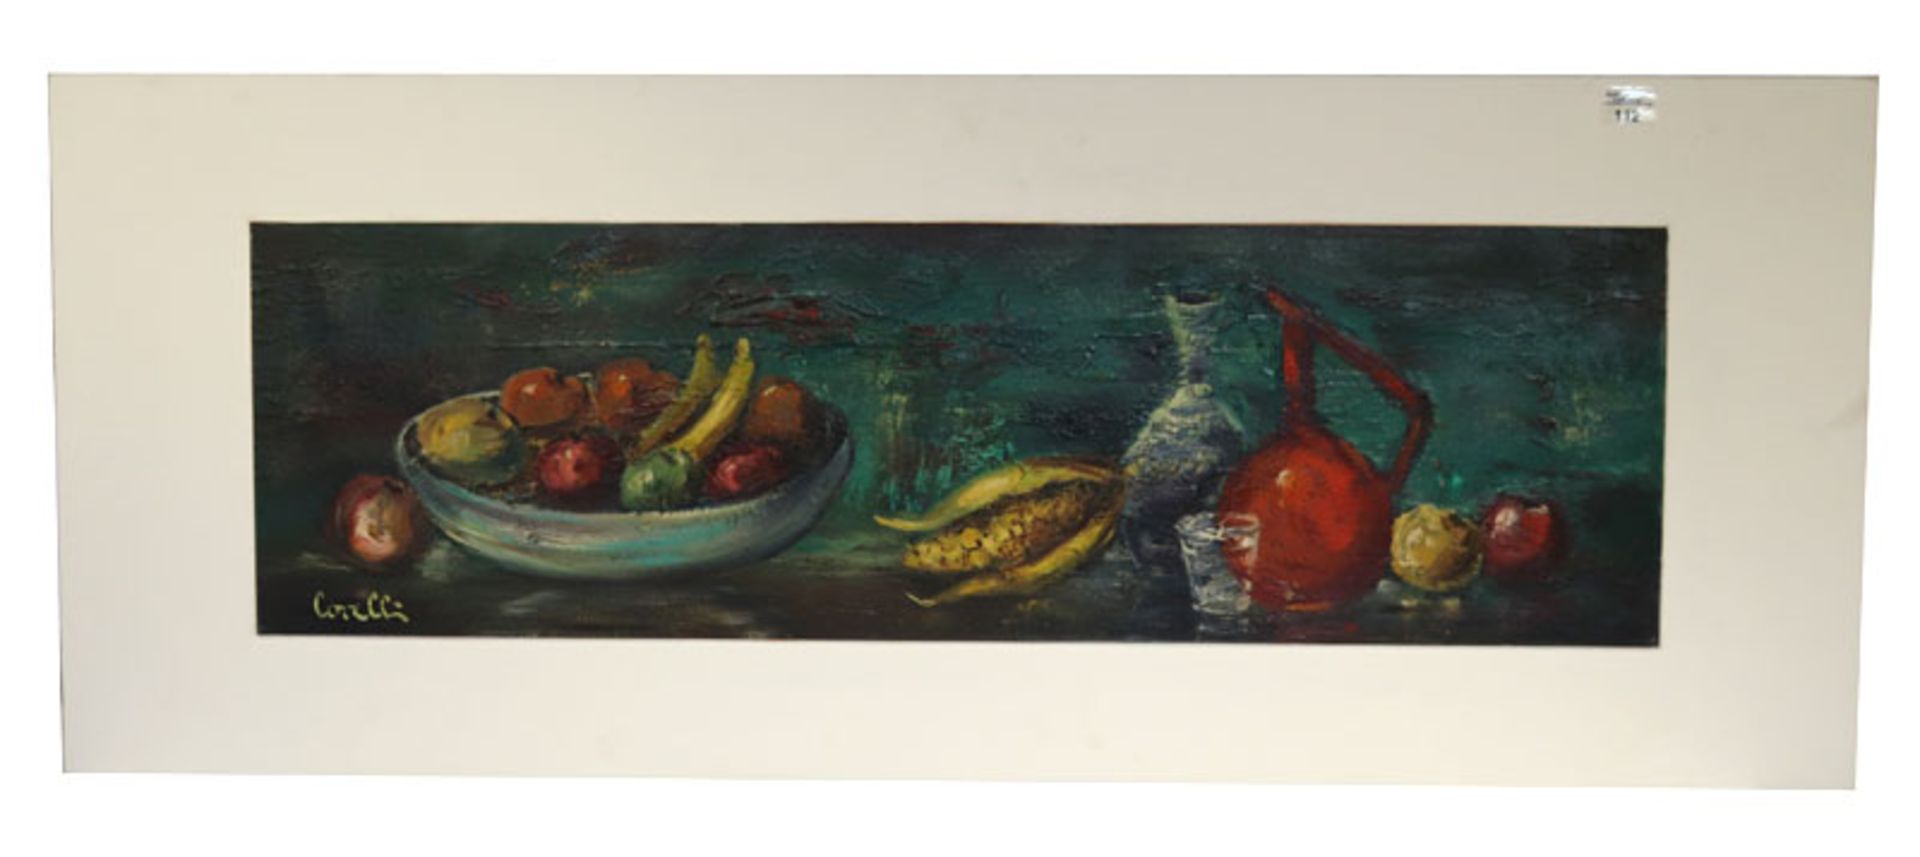 Gemälde ÖL/Hartfaser 'Obststillleben', undeutlich signiert, incl. Platte 51 cm x 128,5 cm, Versand